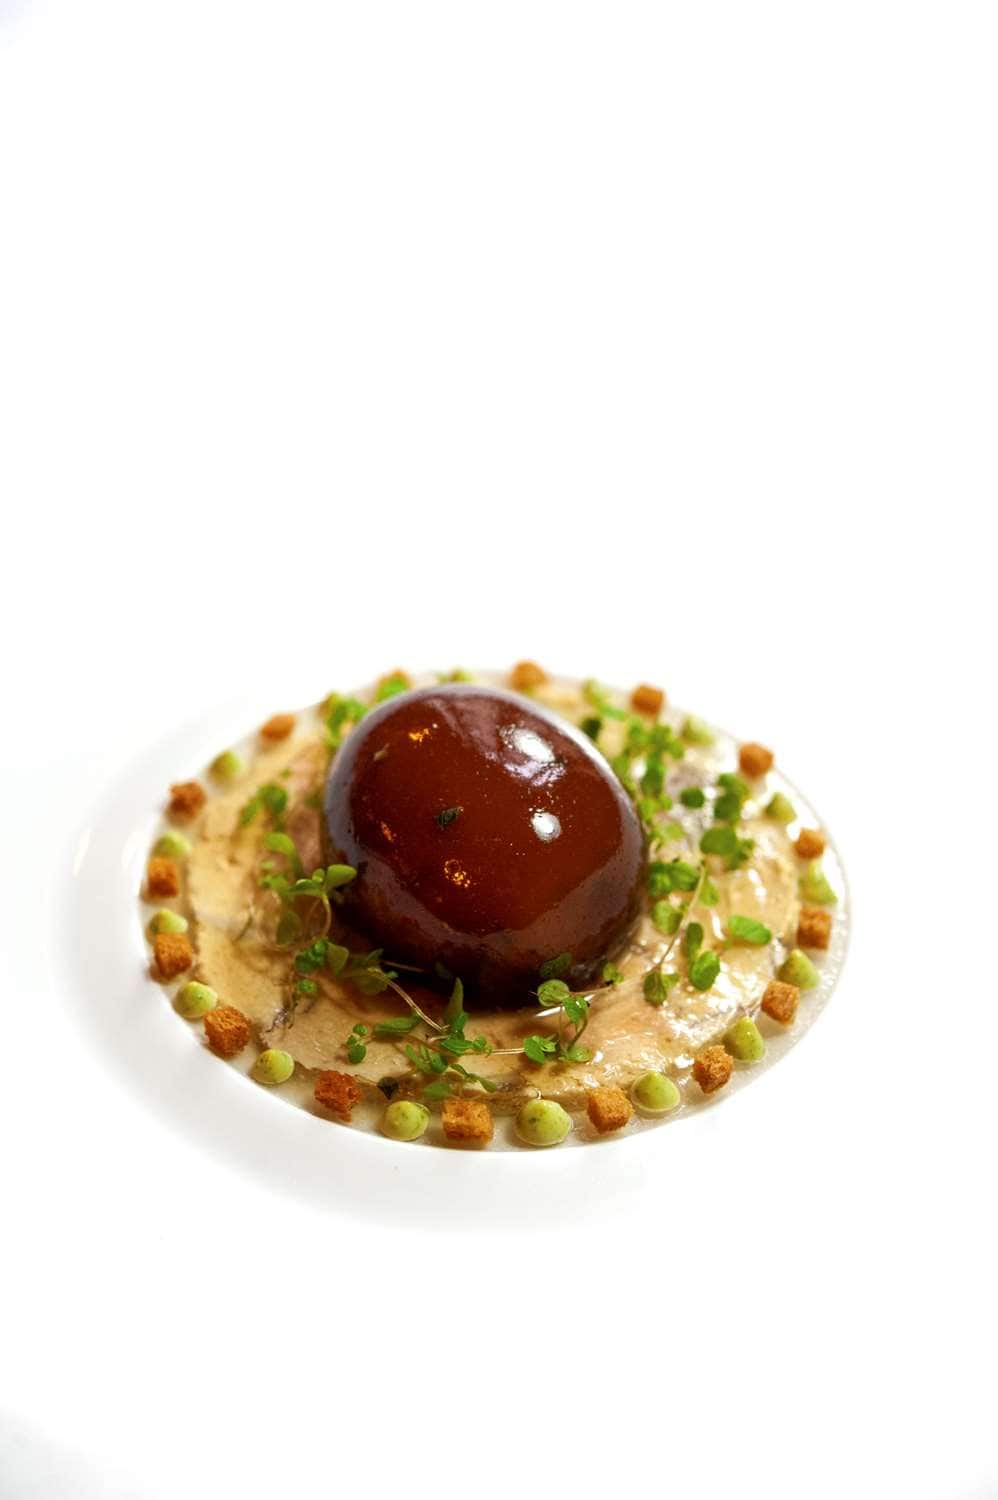 Faux gras or vegan Foie gras by andreiaviana